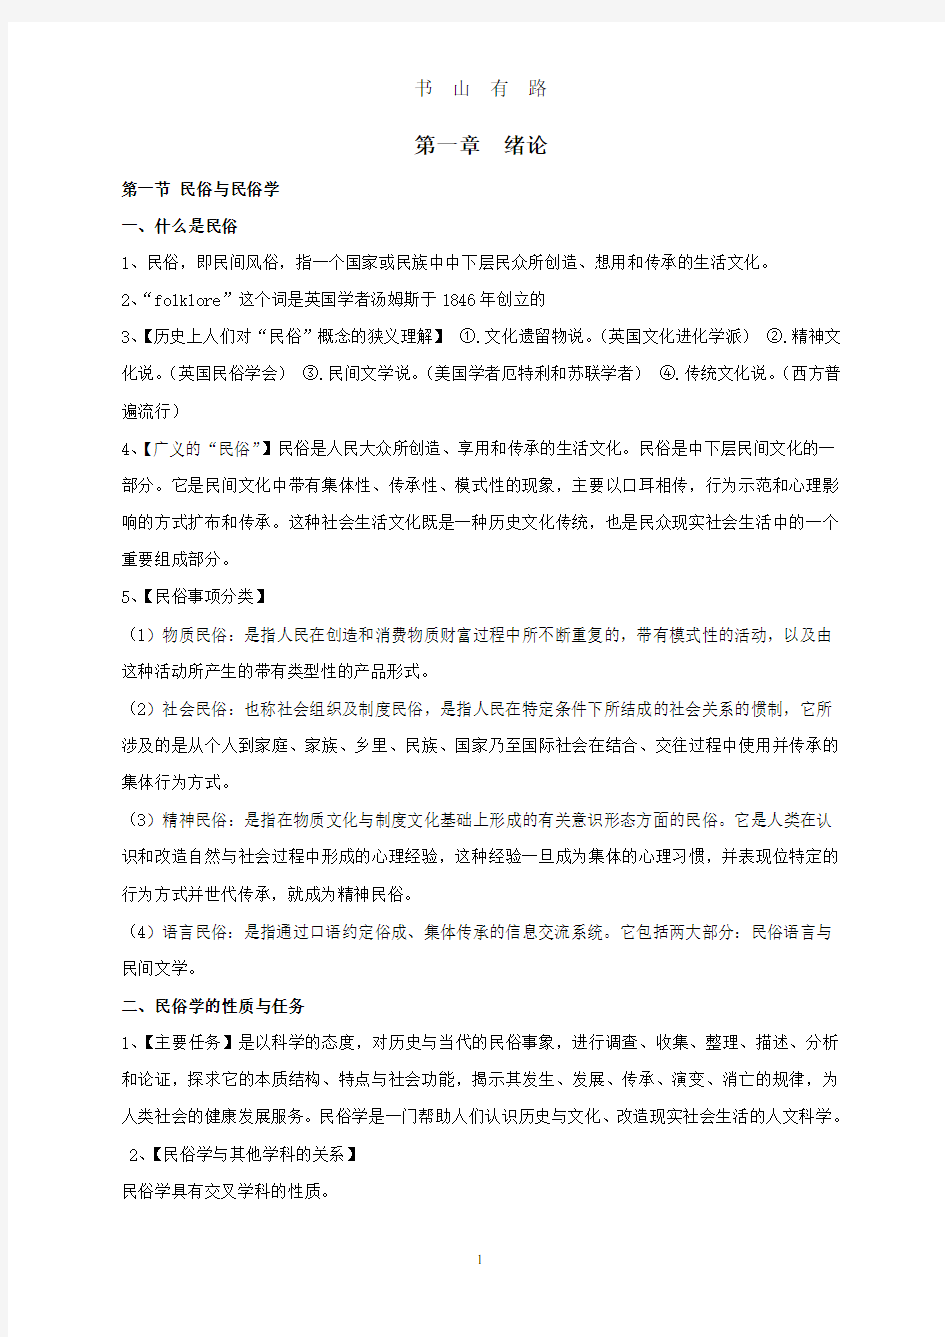 考研民俗学概论复习提纲(钟敬文版)最完整PDF.pdf